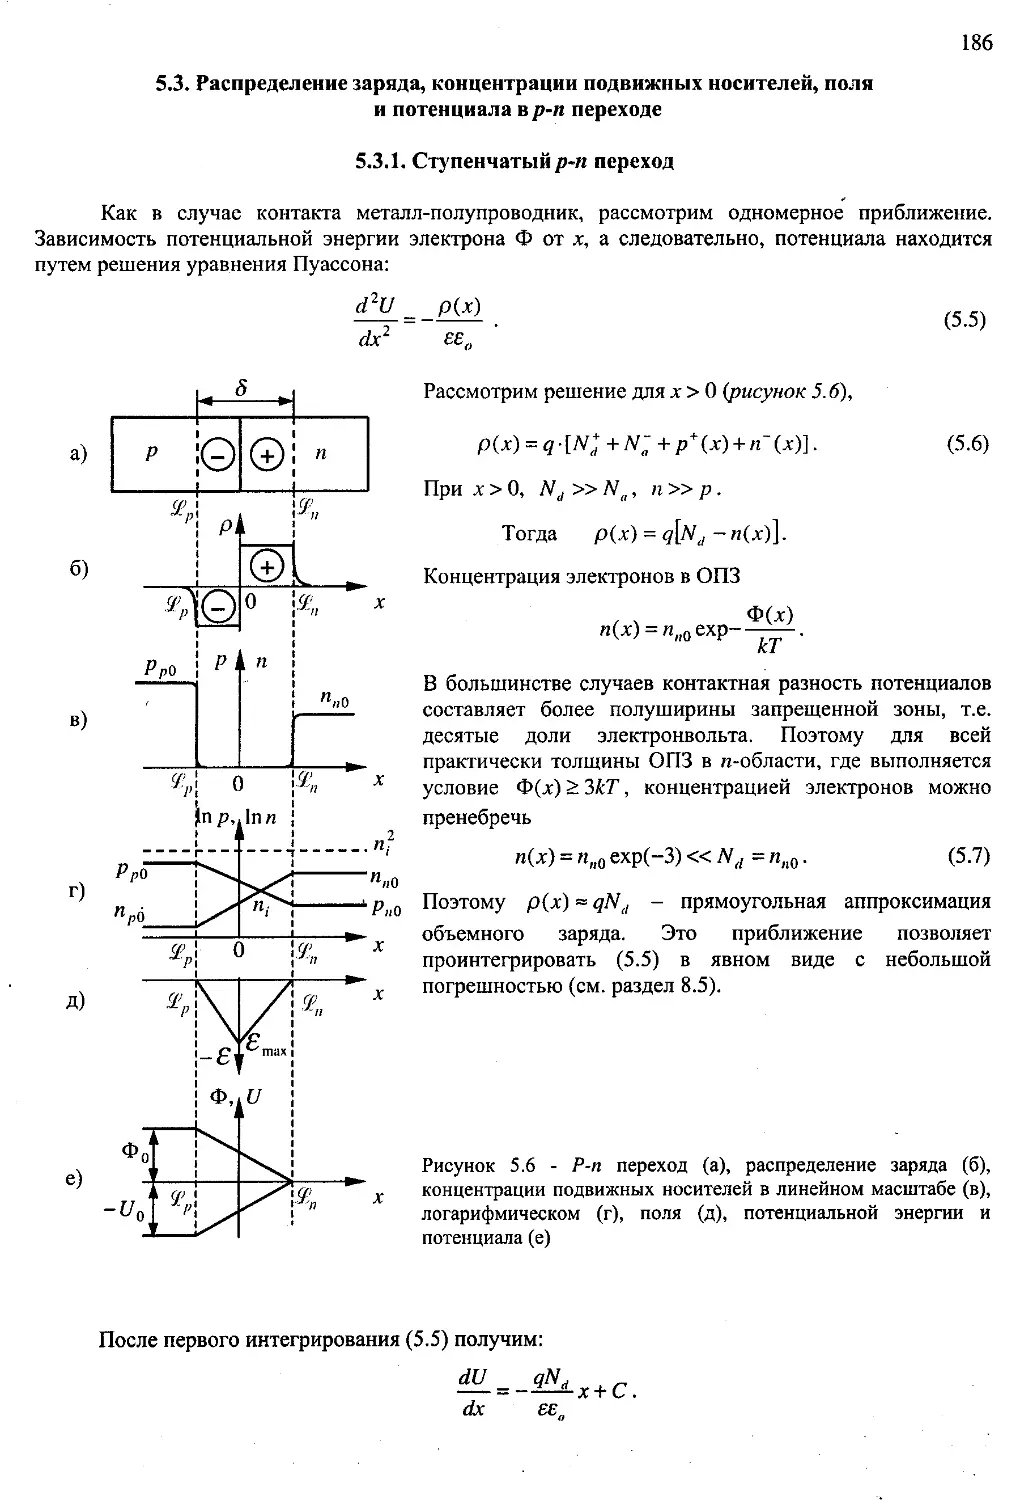 ﻿5.3. Распределение заряда, концентрации подвижных носителей, поля и потенциала в p-n переход